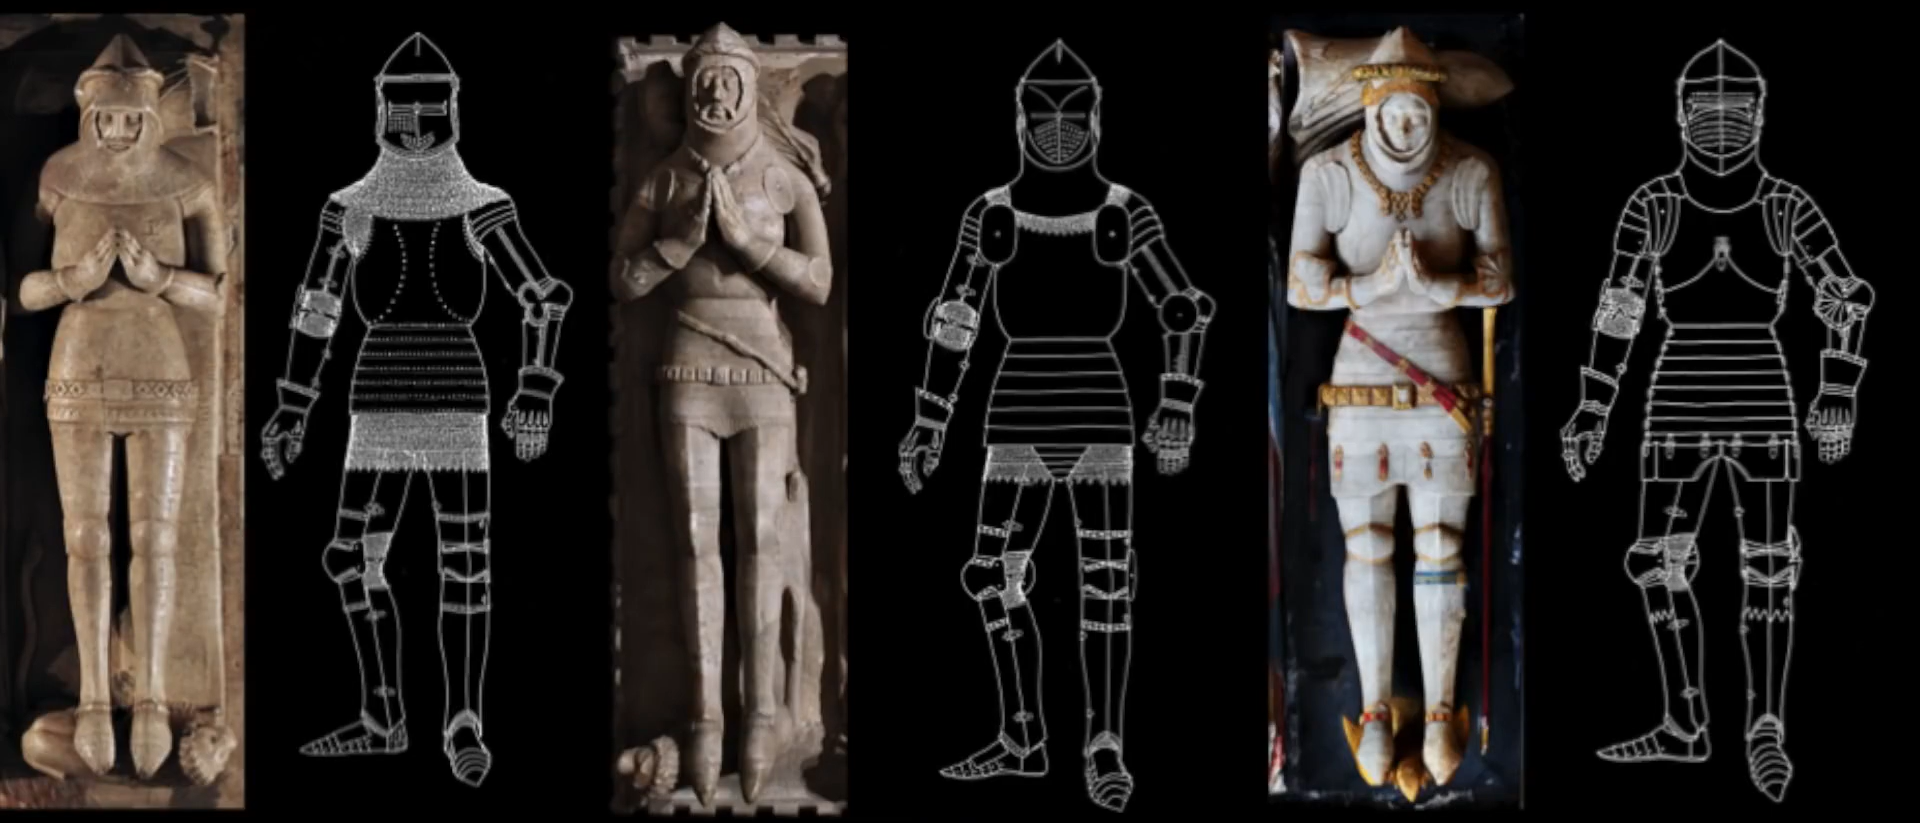 15世紀英國雕塑的演變中可以看到甲冑結構的變化，鎖甲部分越來越少，板甲組件越來越完善